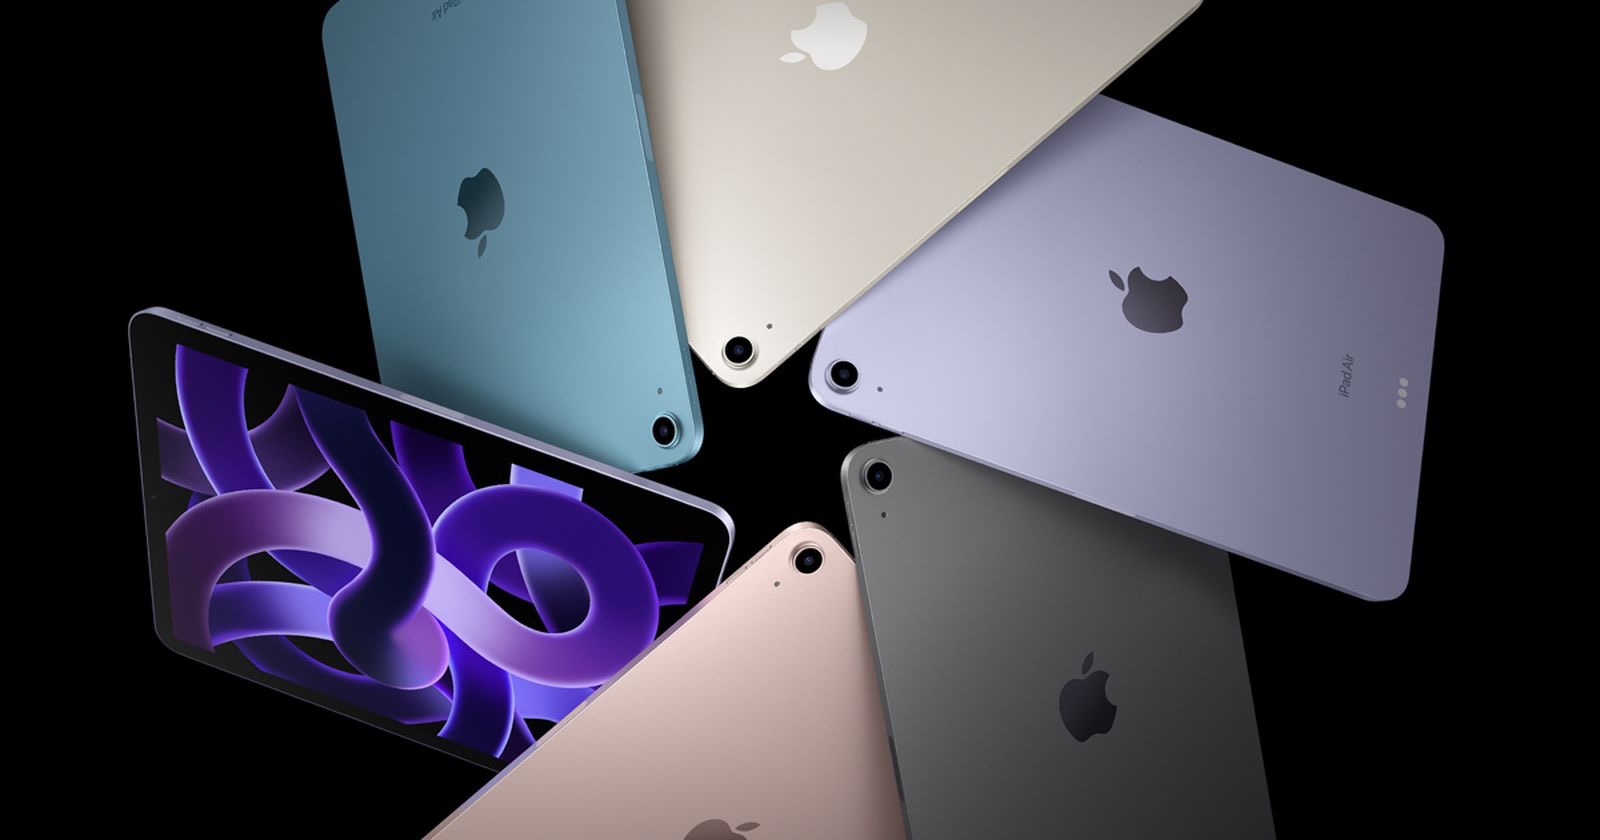 ผลการทดสอบเผย Apple M1 ใน iPad Air แรงเท่า iPad Pro!